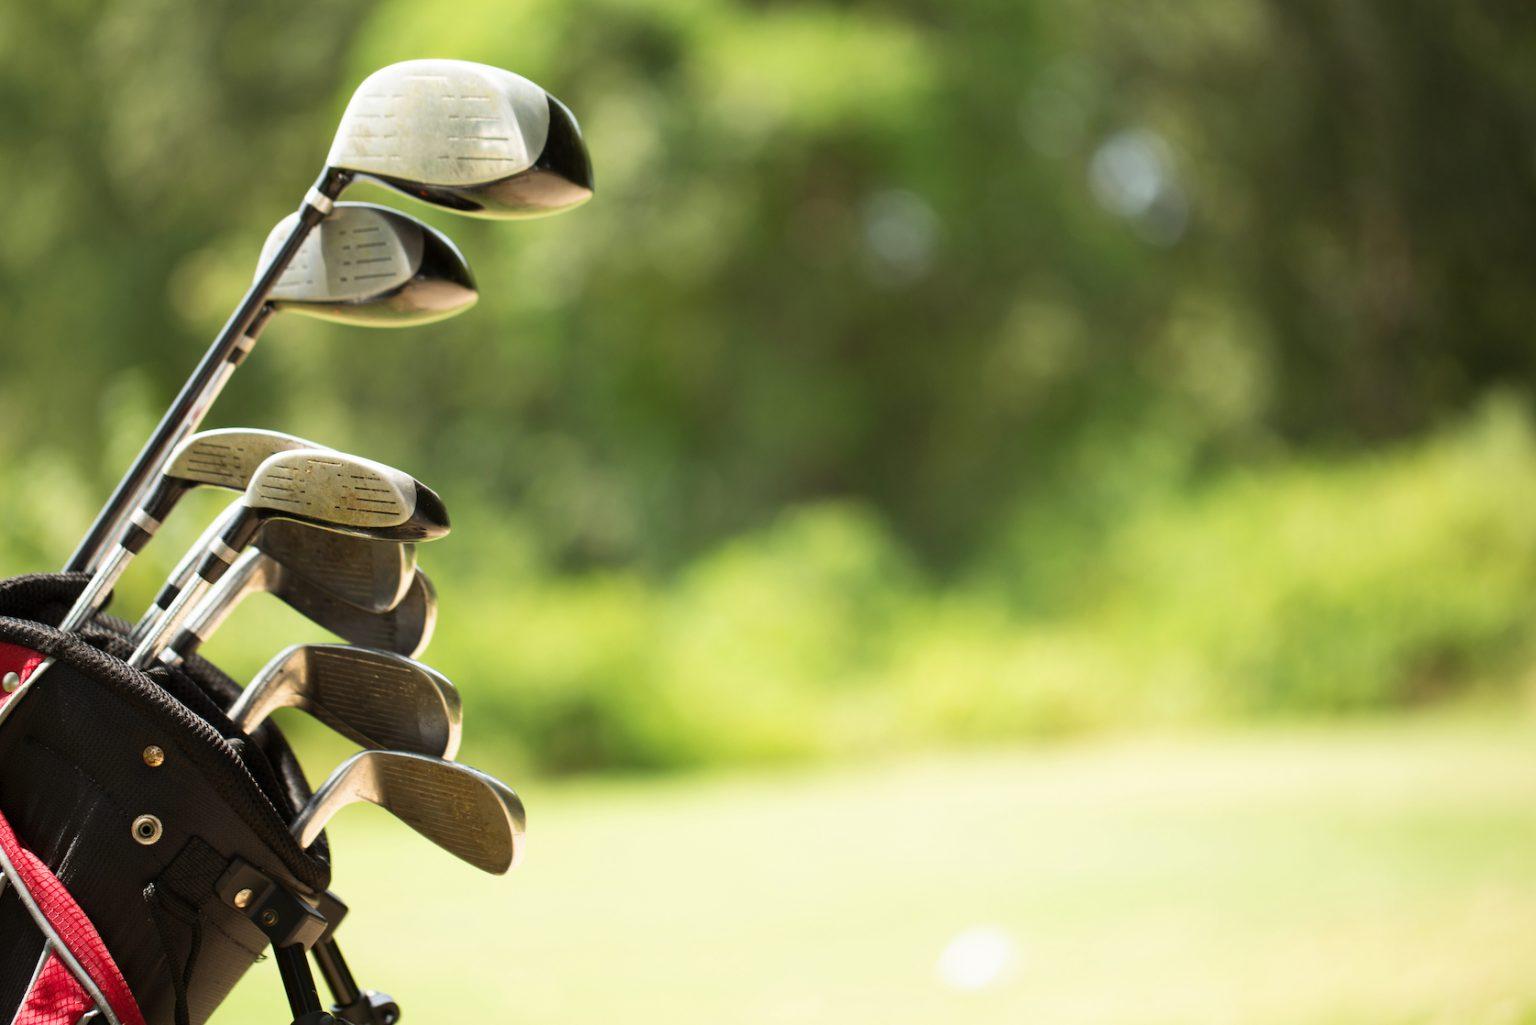 Đừng bỏ lỡ kinh nghiệm chọn gậy golf chuẩn xác nhất